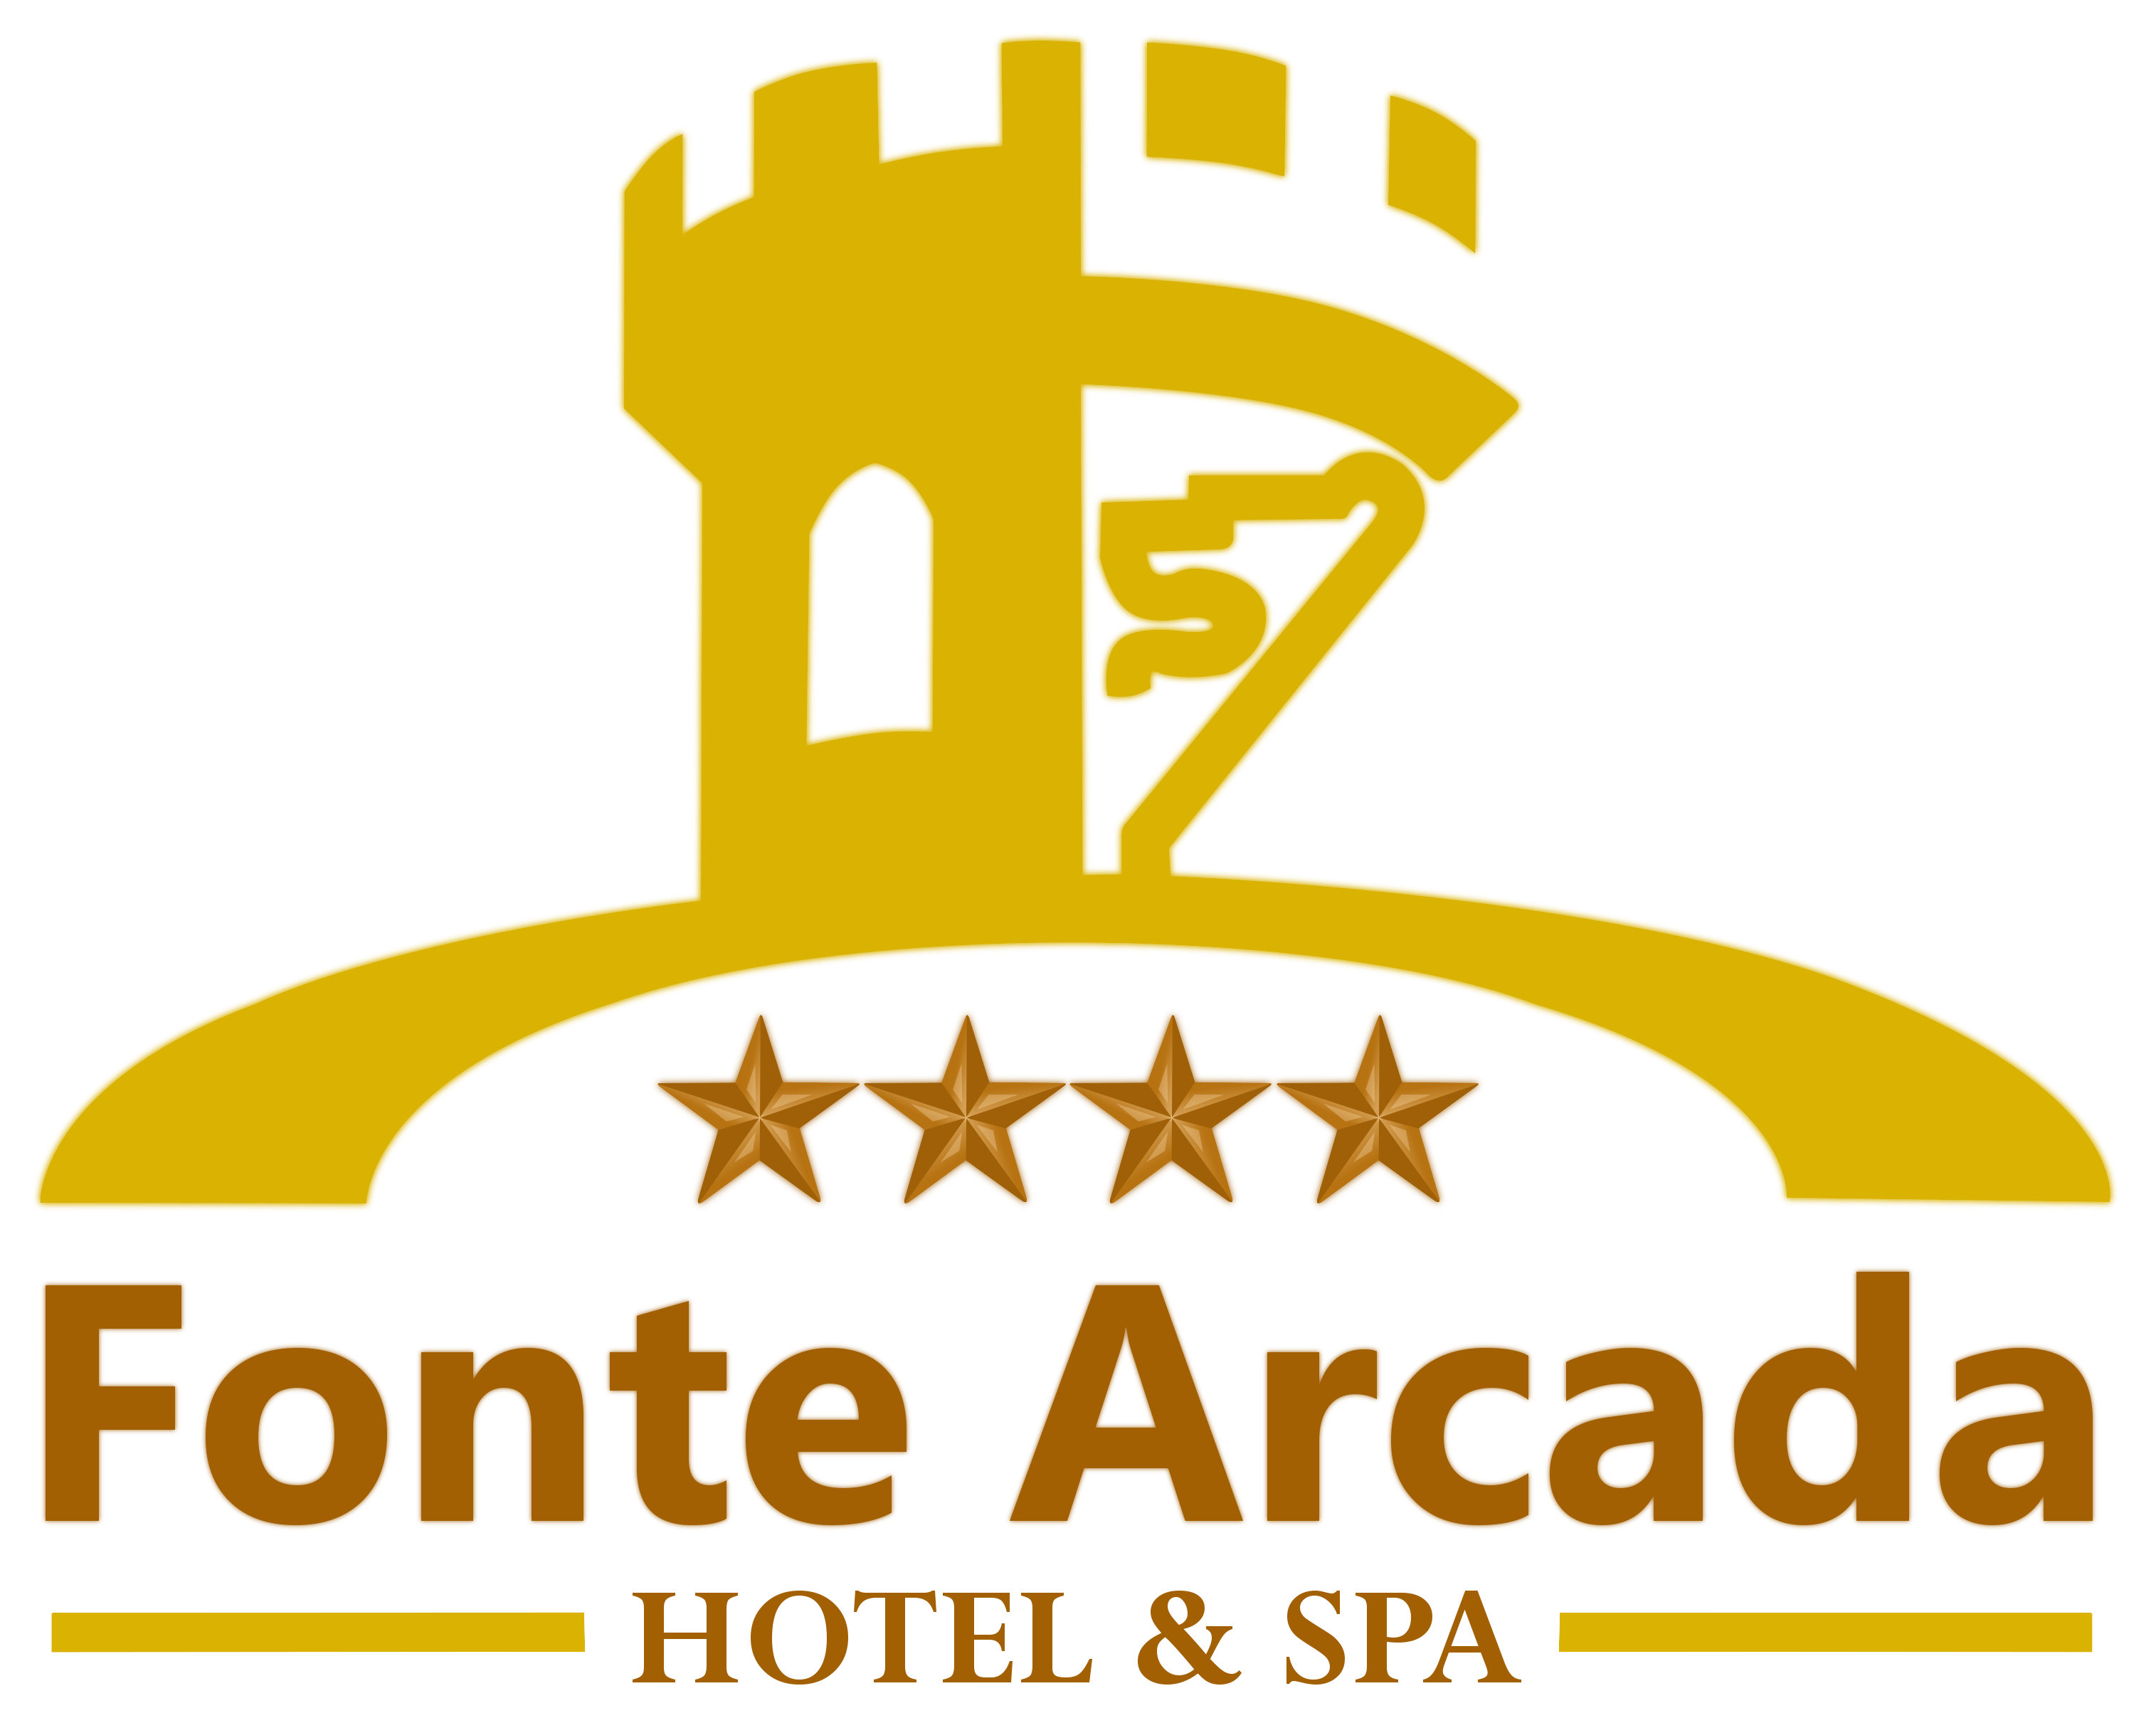 Fonte Arcada Hotel & Spa